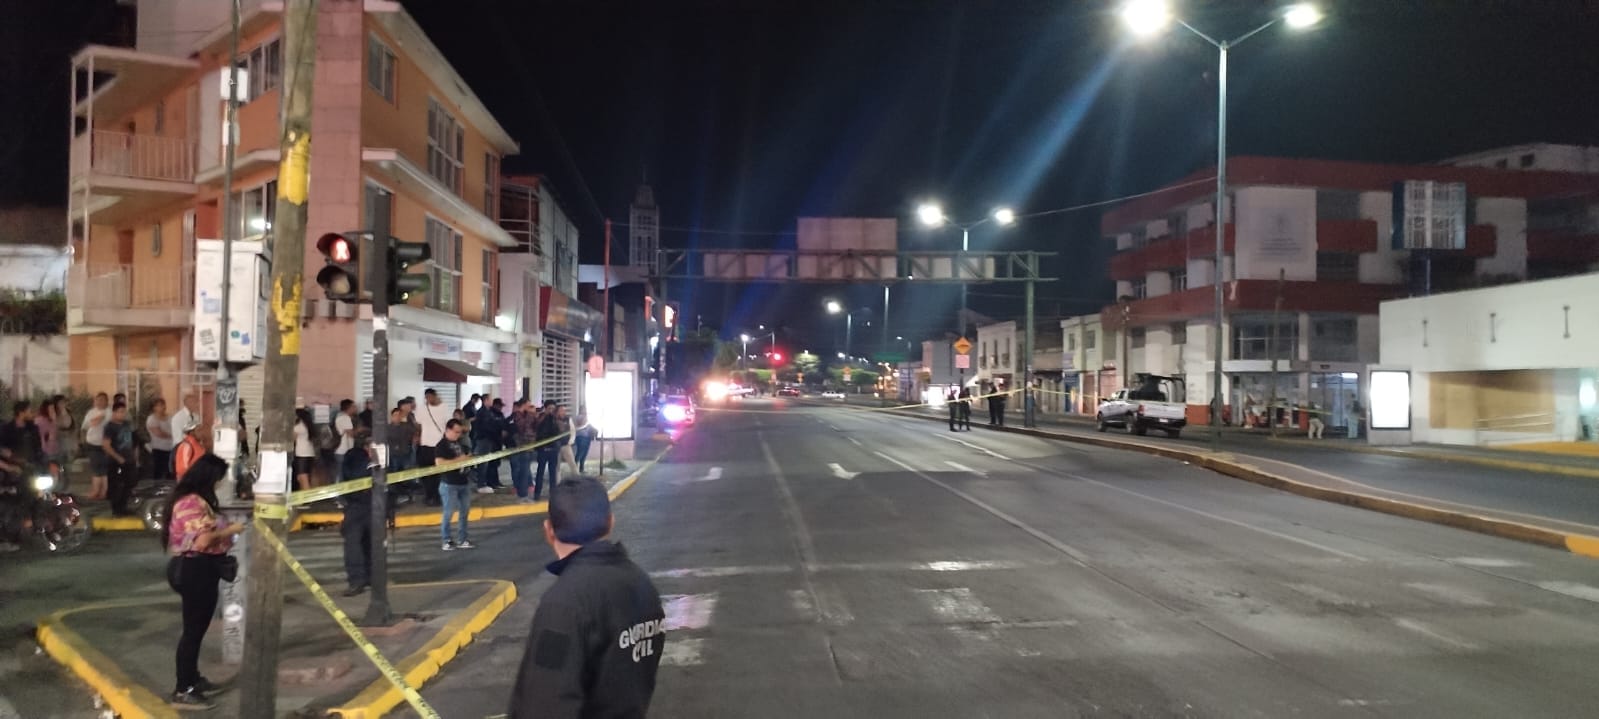 El hecho de violencia sucedió la noche de este sábado en el citado negocio ubicado a la orilla de la avenida Francisco I. Madero, a la altura de la colonia Molino de Parras.